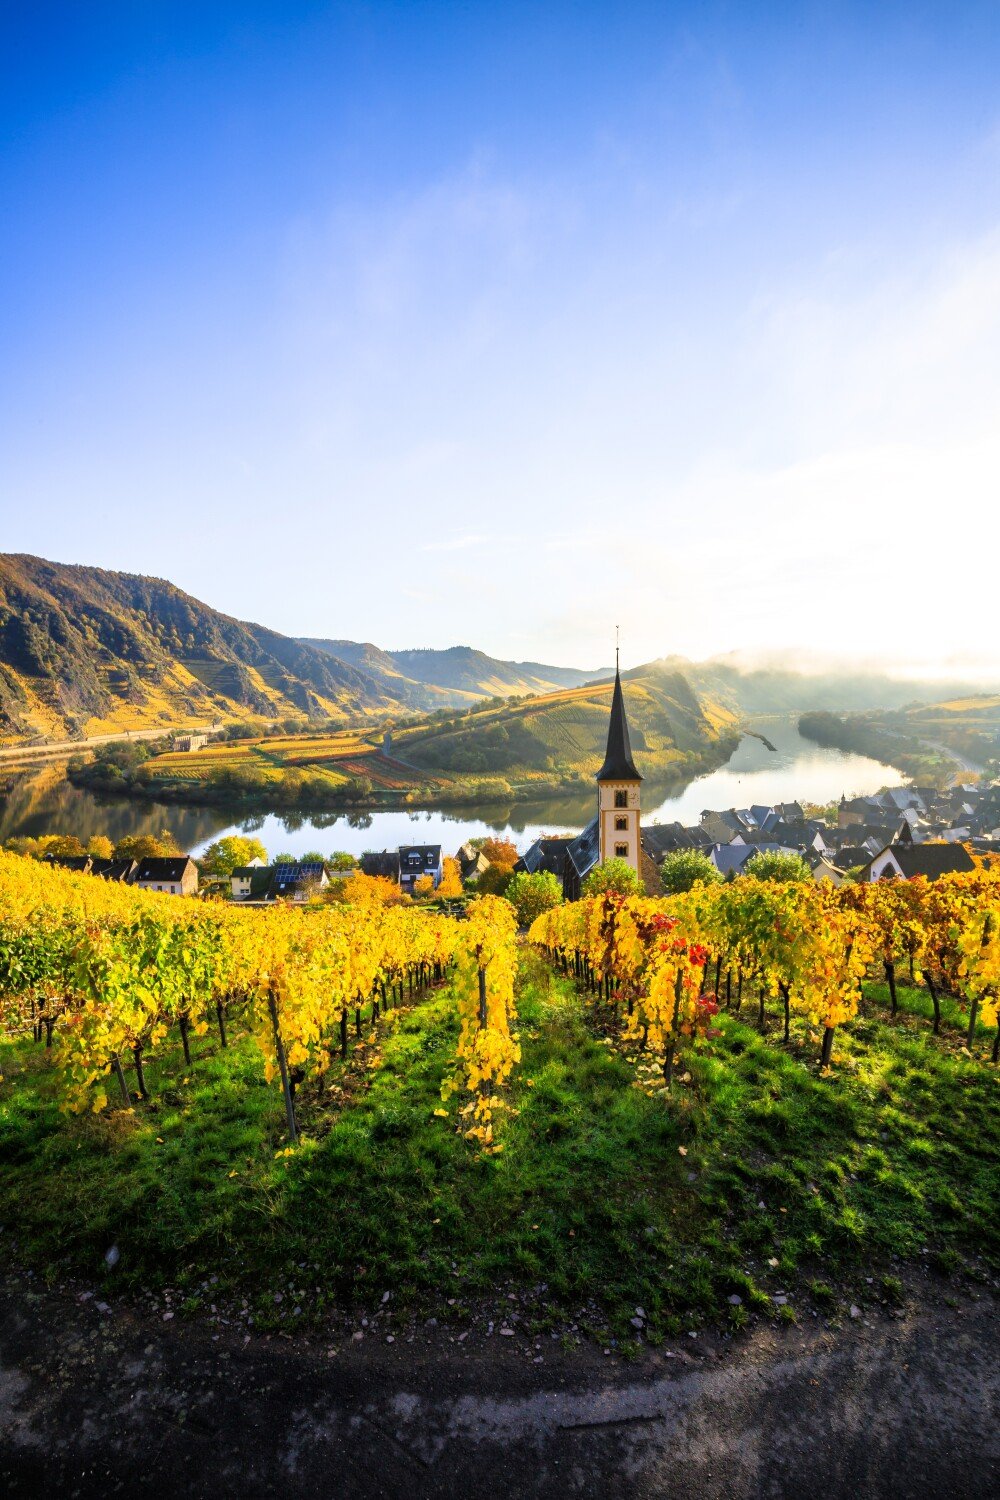 4. Waarom is de Scharzhofberger wijngaard zo beroemd?